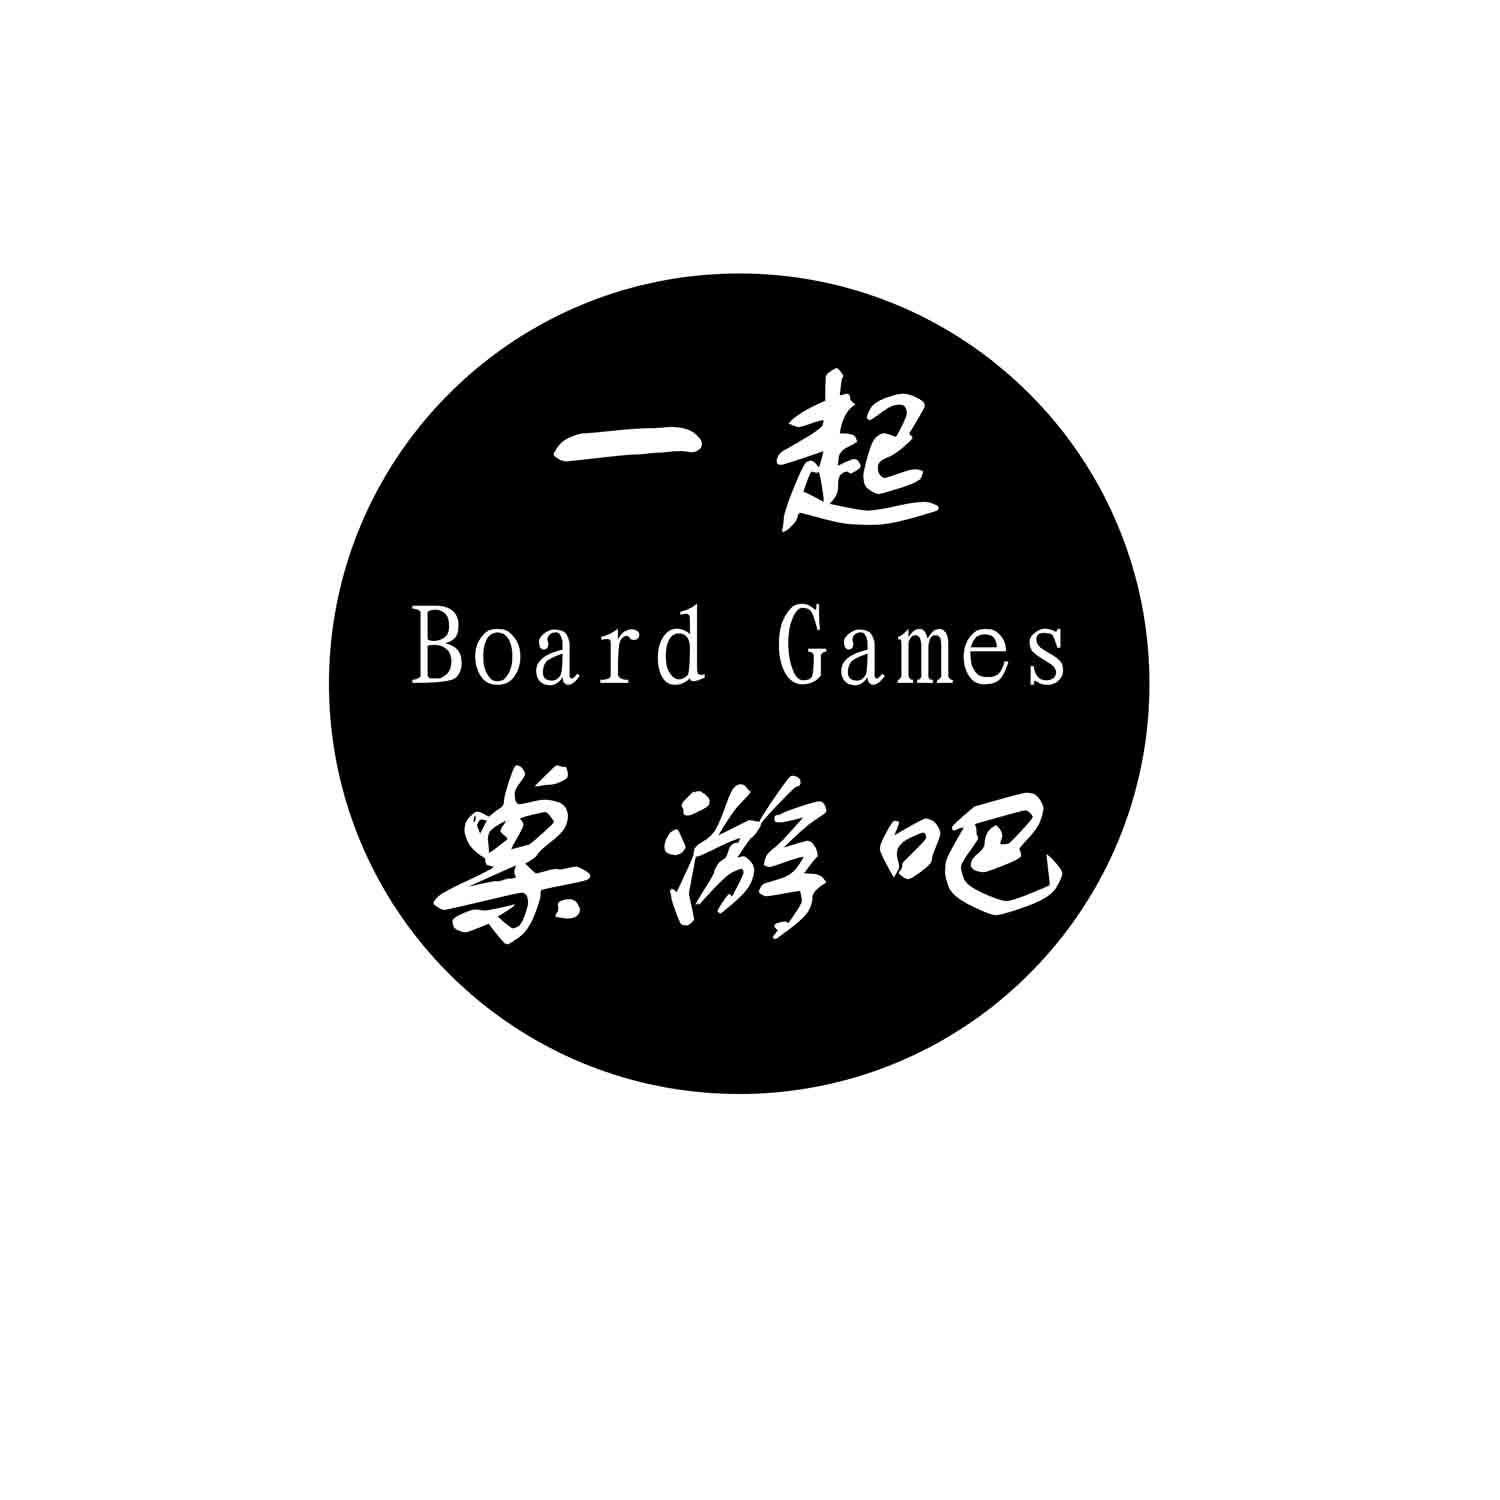 商标文字一起桌游吧 board games商标注册号 18965323,商标申请人王一